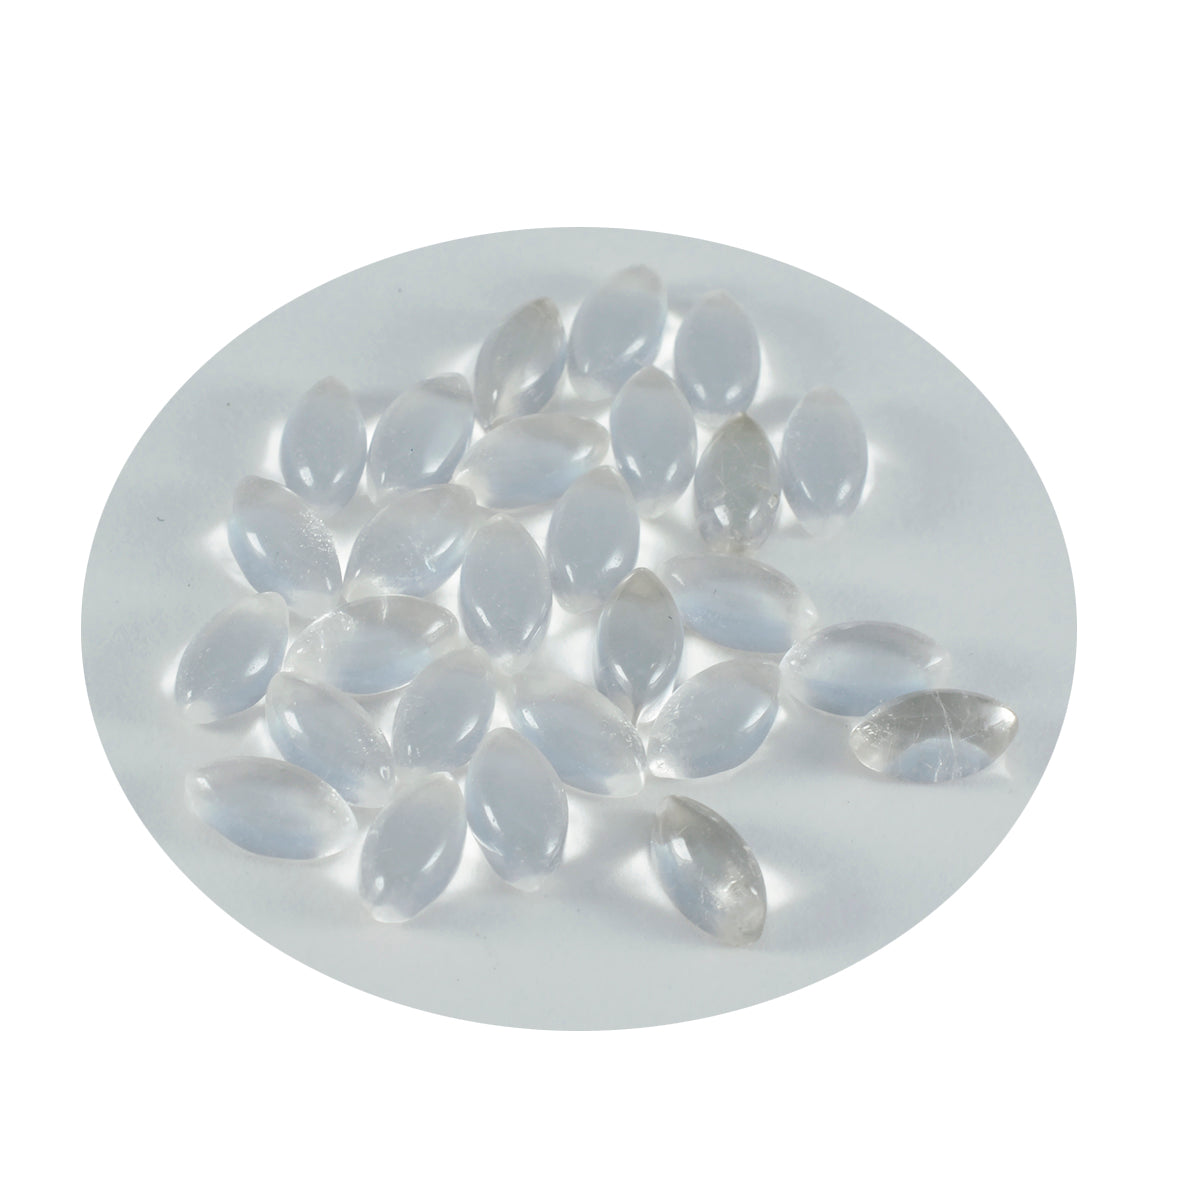 riyogems 1pc cabochon di quarzo di cristallo bianco 5x10 mm forma marquise pietra preziosa sciolta di bella qualità